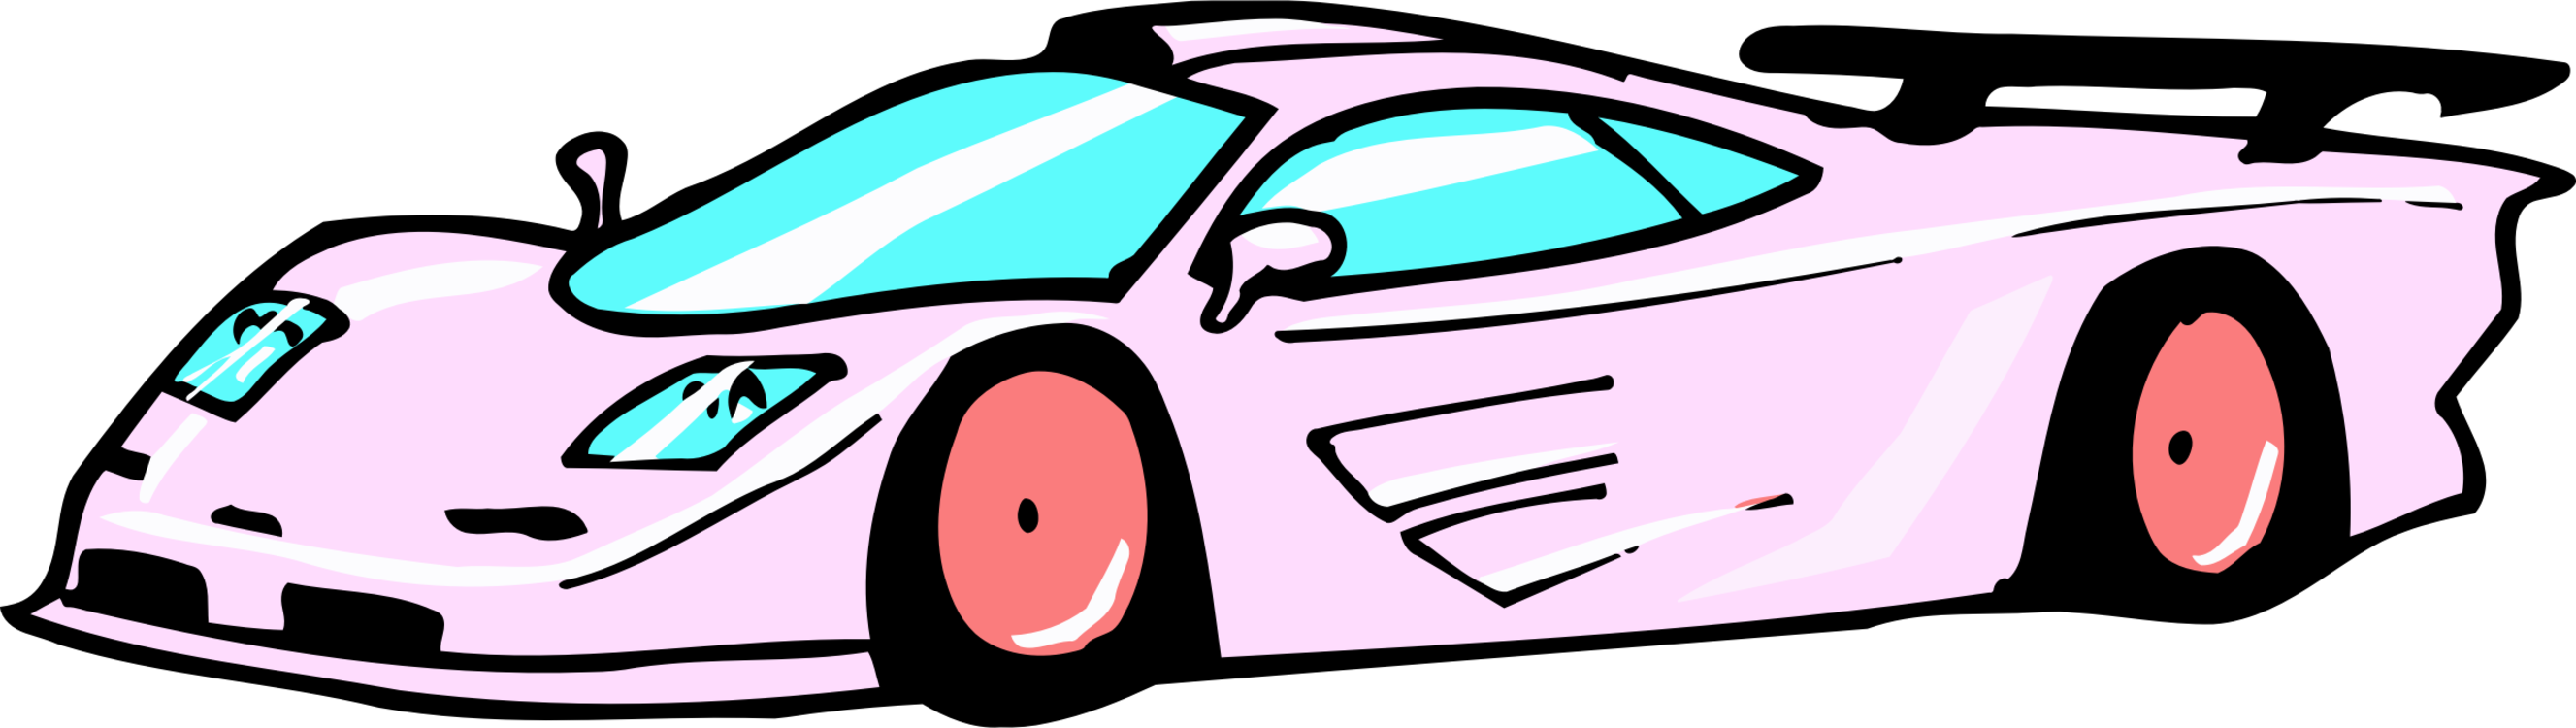 Pink,Compact Car,Car